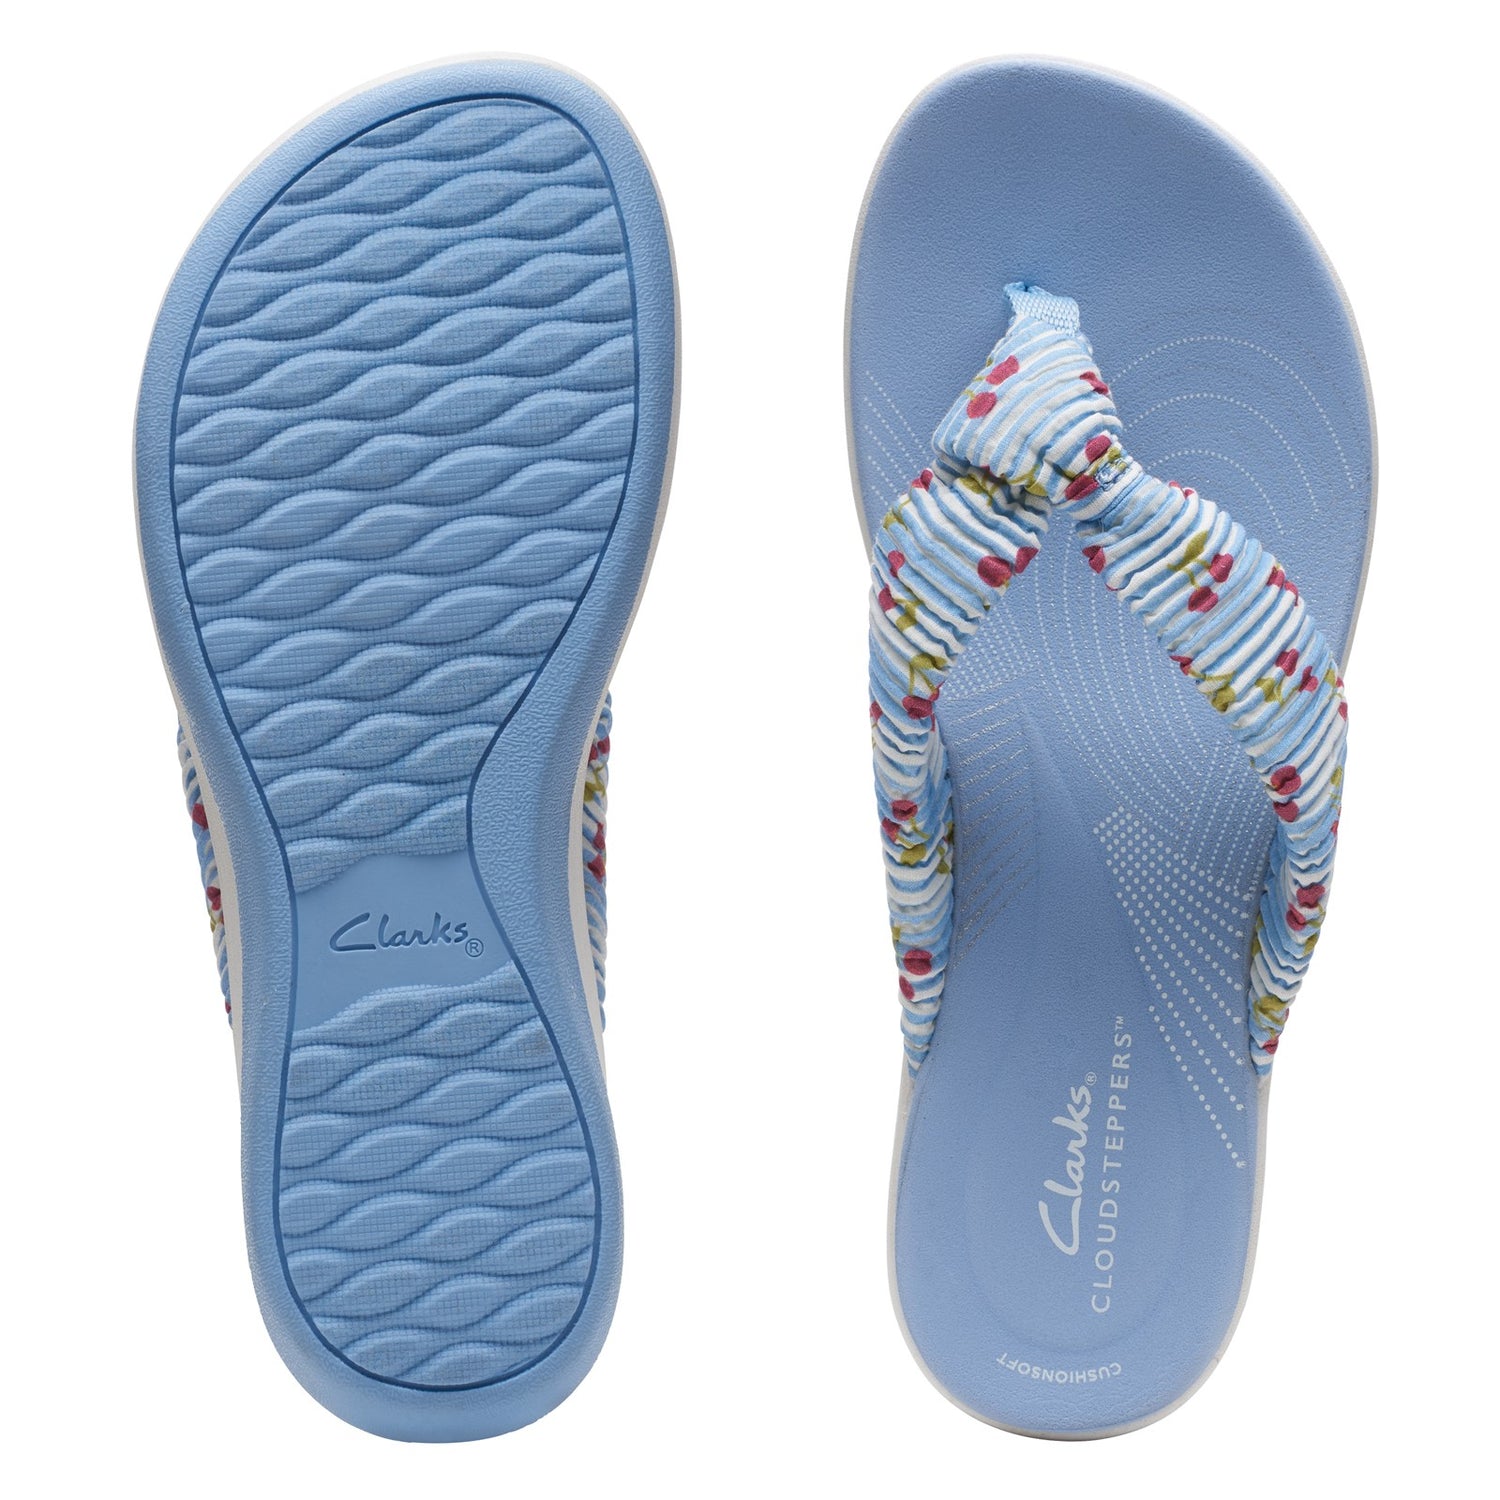 Peltz Shoes  Women's Clarks Arla Glison Sandal BLUE / CHERRIES 26164476